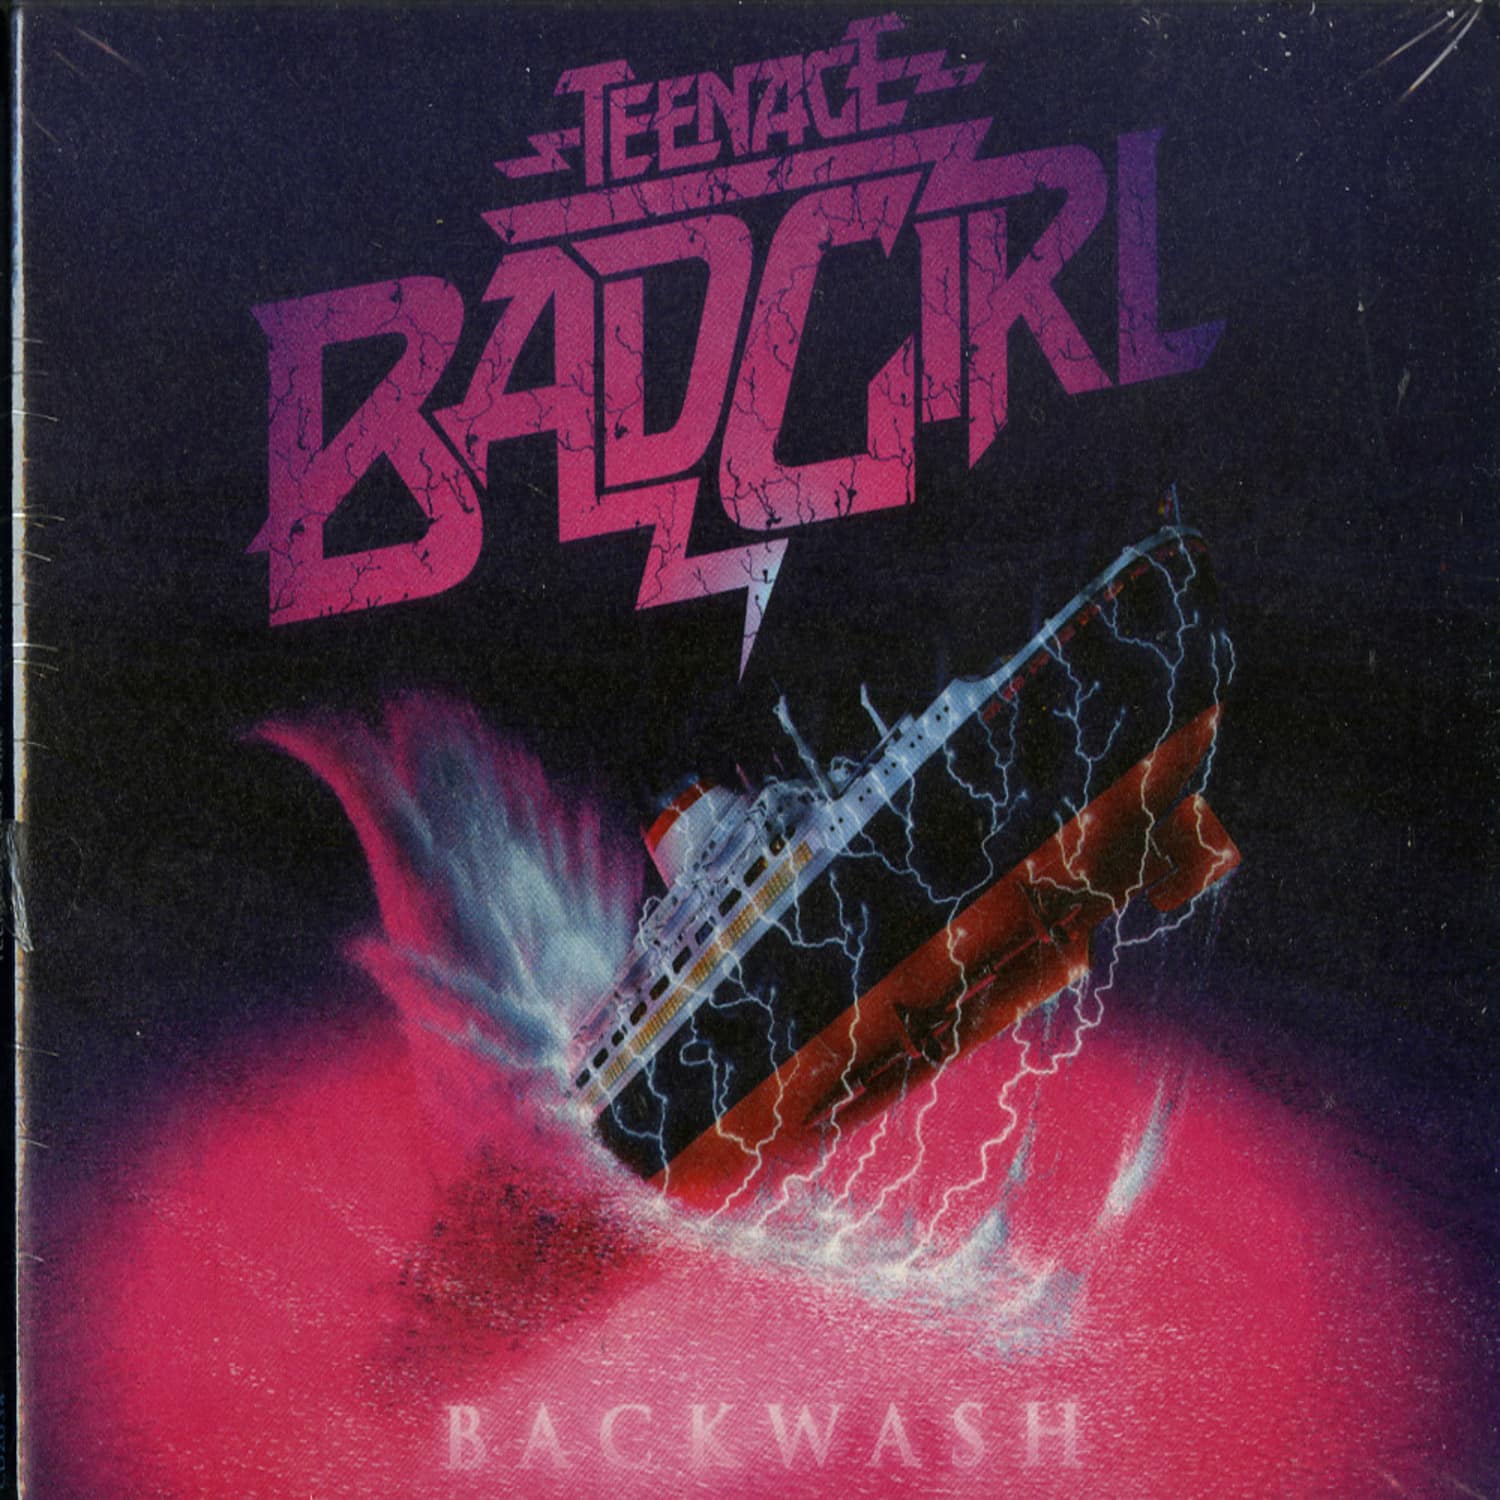 Teenage Bad Girl - BACKWASH 